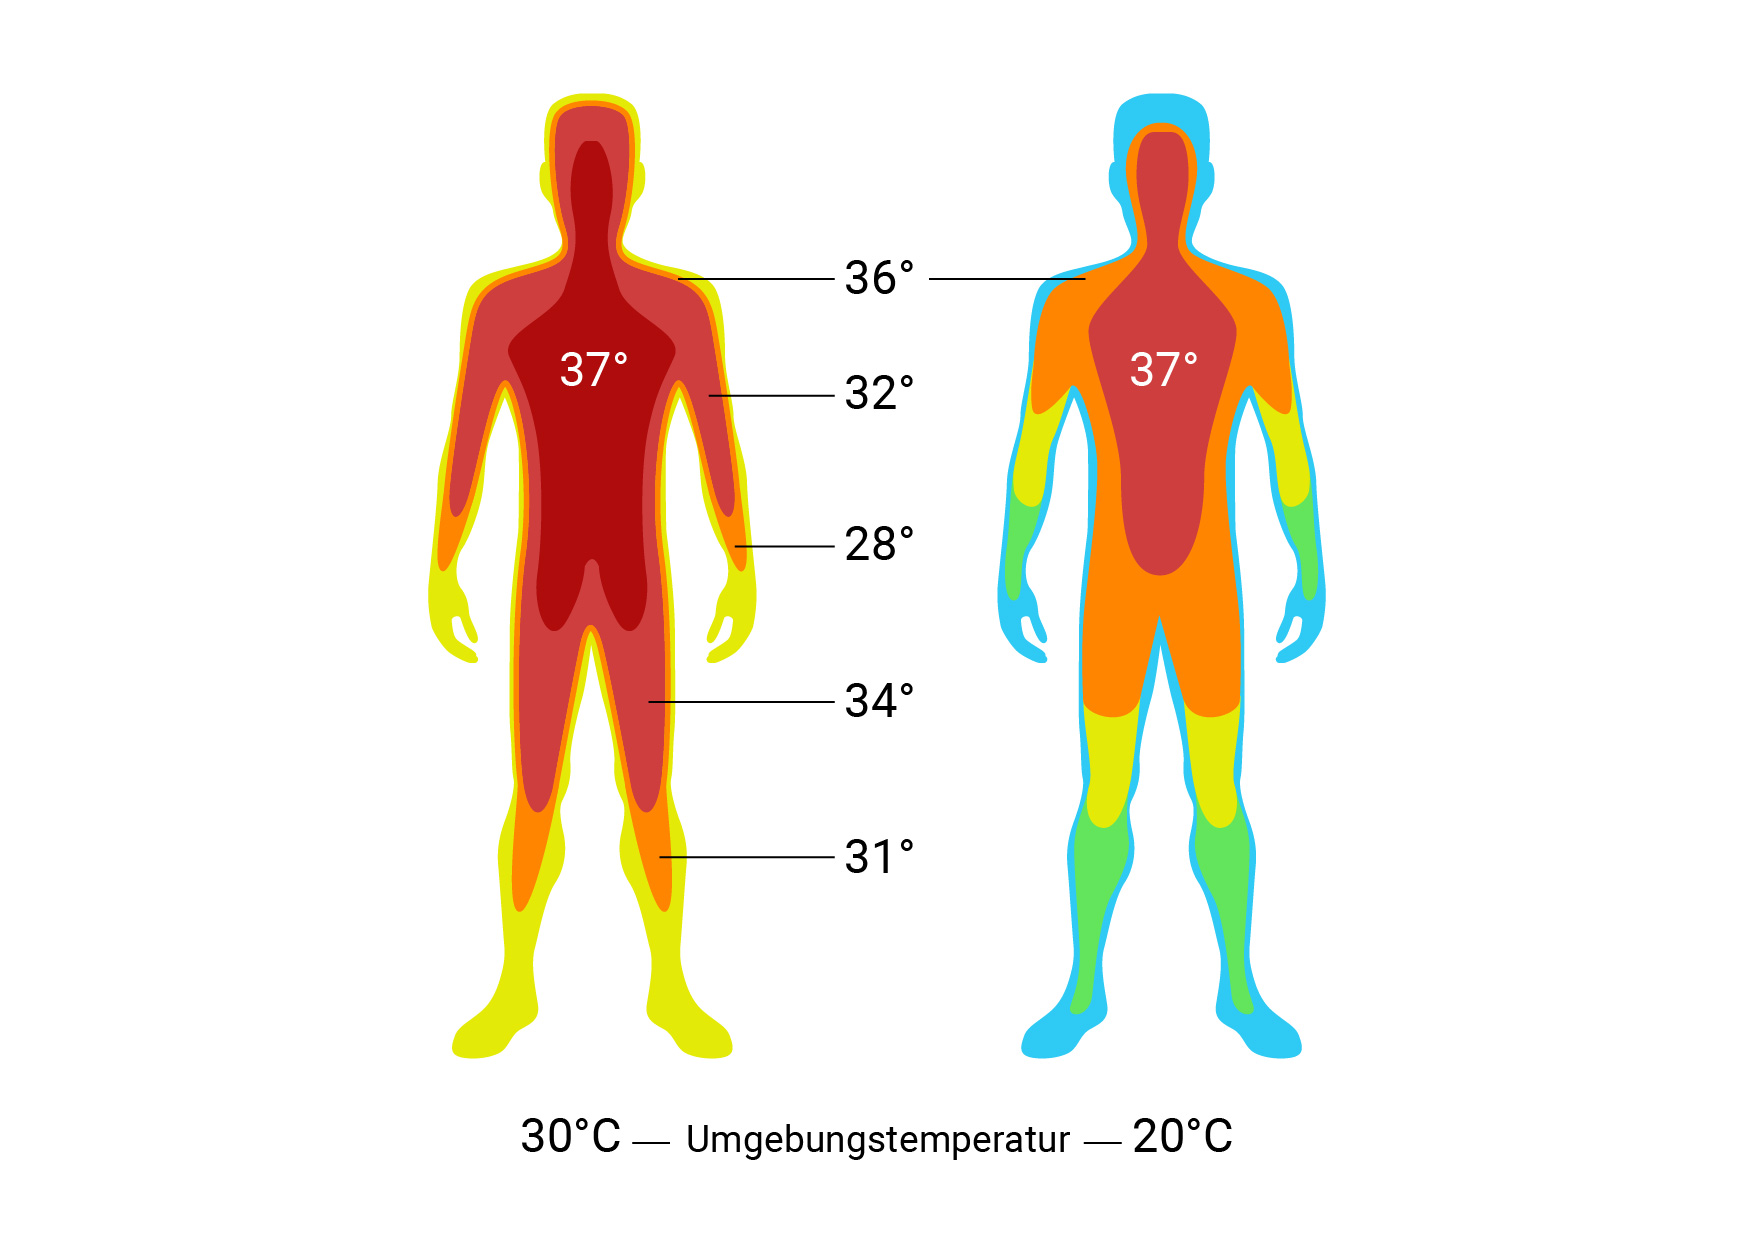 Области тела человека температура. Температура тела человека. Температурная карта тела человека. Показатели температуры тела человека. Температурные зоны тела человека.